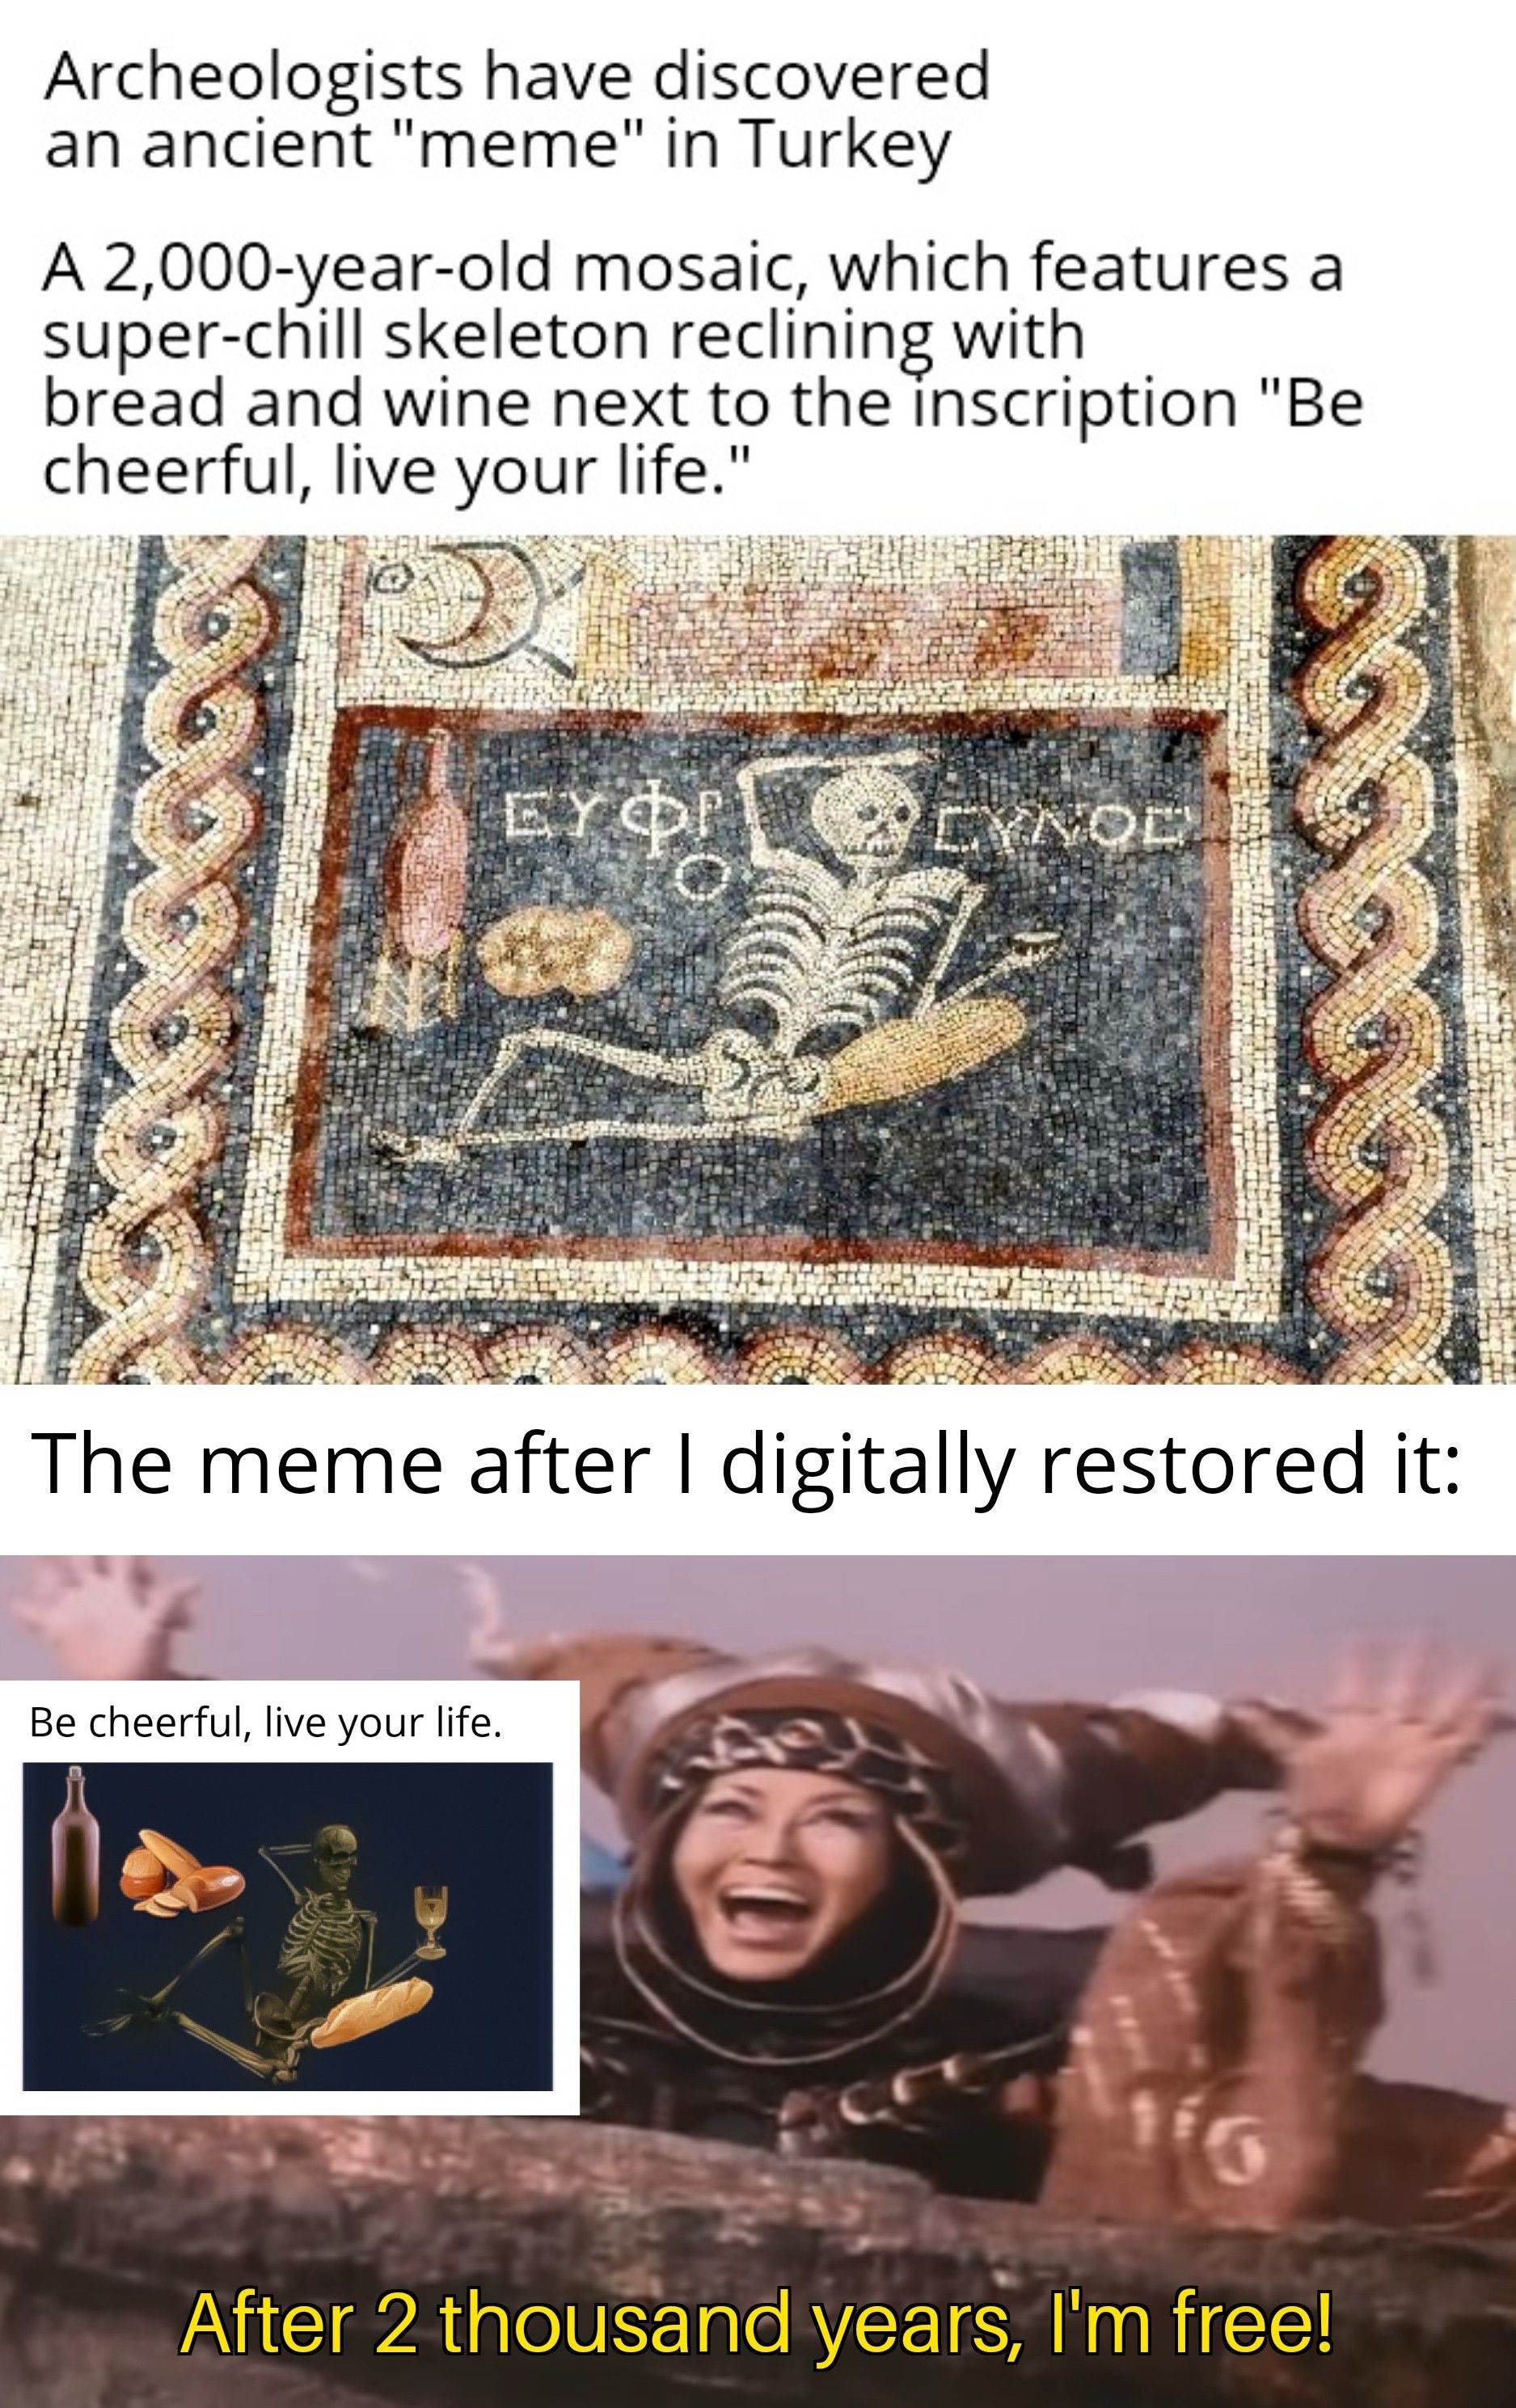 Don't mind me, just reviving an ancient meme